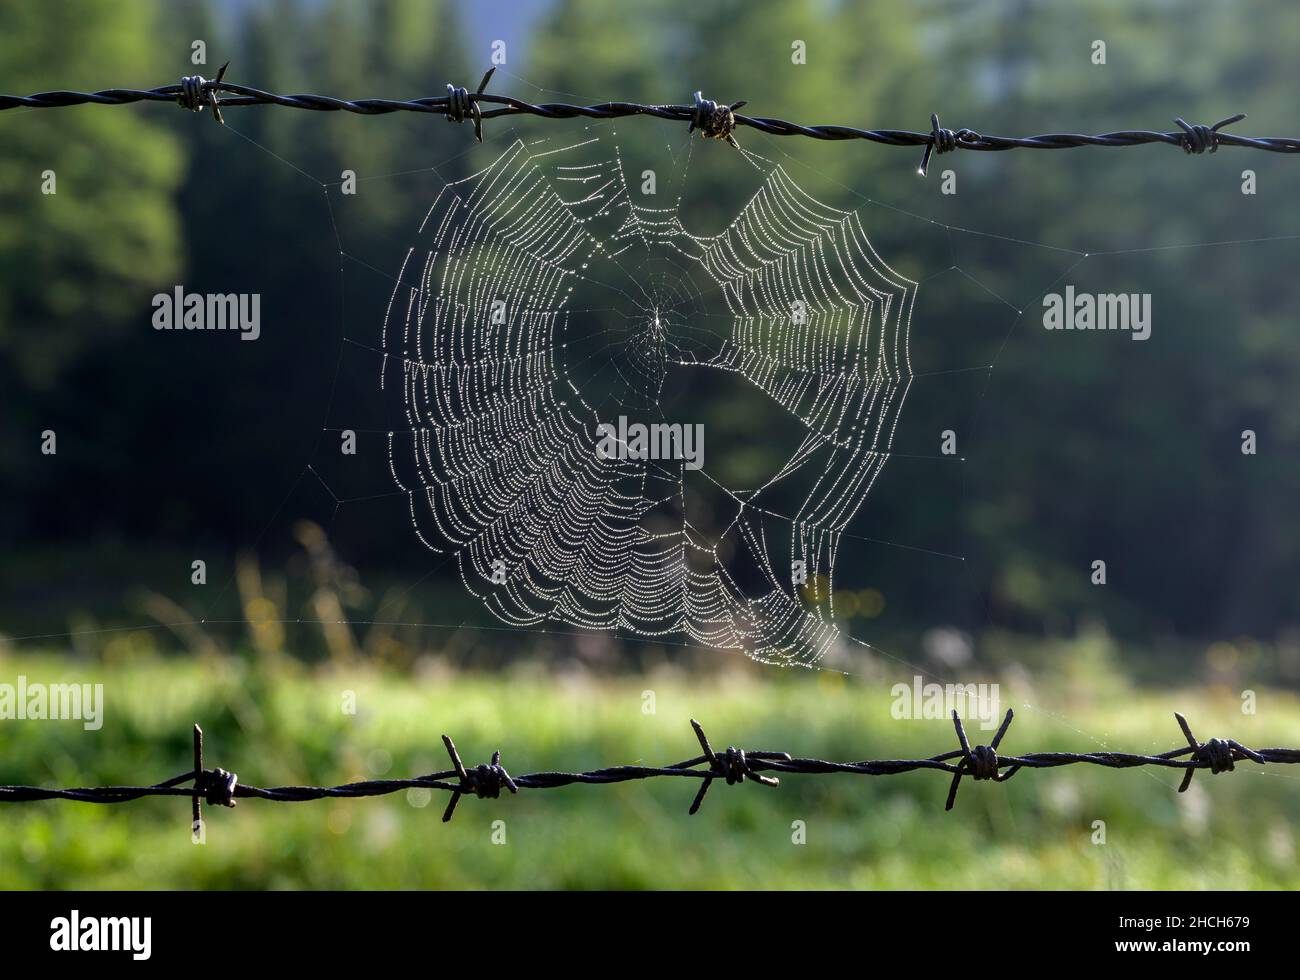 Spider's web on barbed wire fence, Weisspriach, Salzburg, Austria Stock Photo